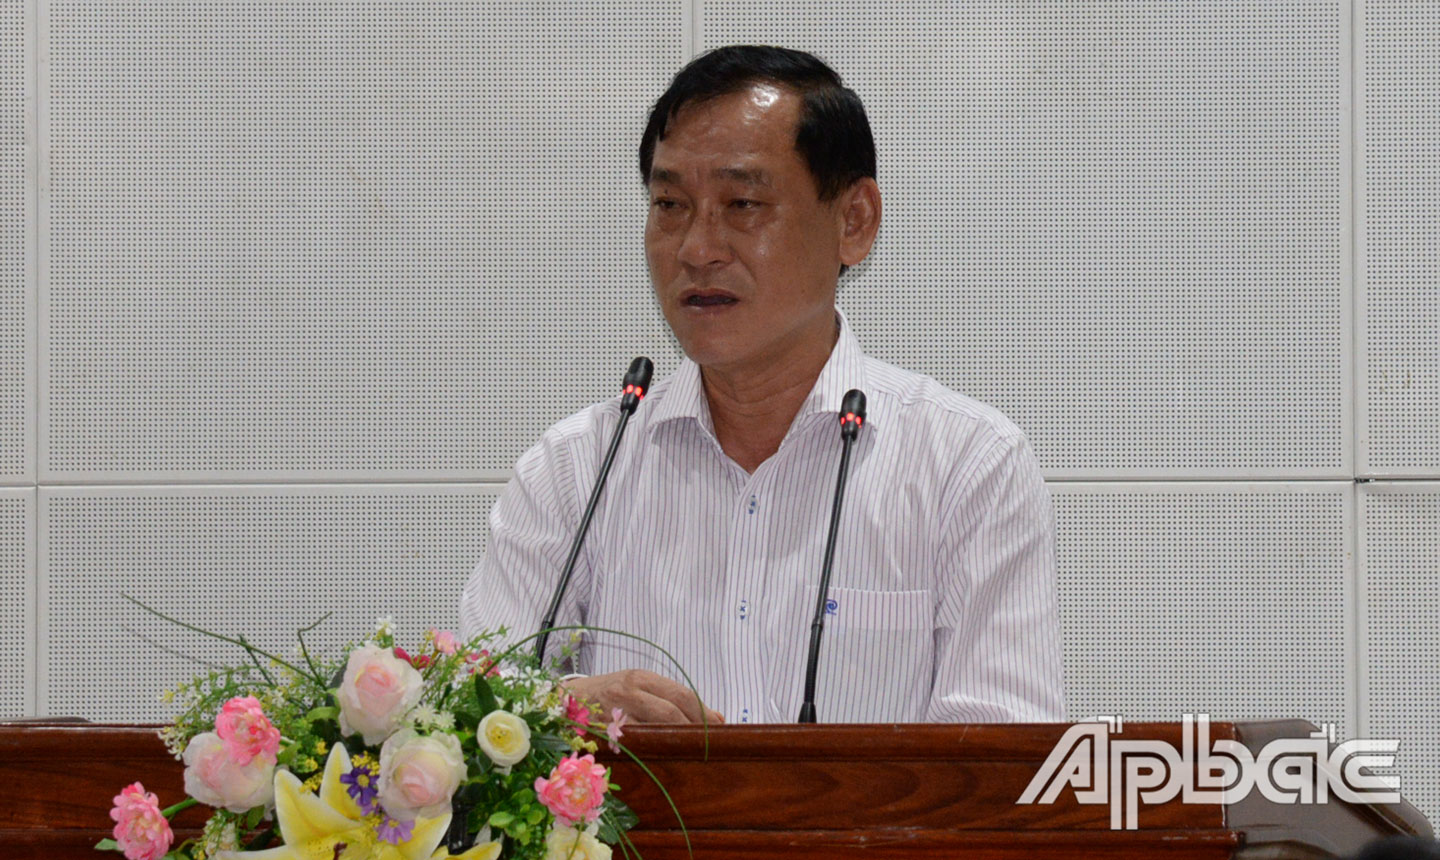 Đồng chí Nguyễn Văn Vĩnh yêu cầu các địa phương phải quyết liệt hơn nữa trong thực hiện các giải pháp kiểm soát dịch bệnh tại cuộc họp trực tuyến 3 cấp về công tác phòng, chống dịch Covid-19 vào chiều ngày 15-9.